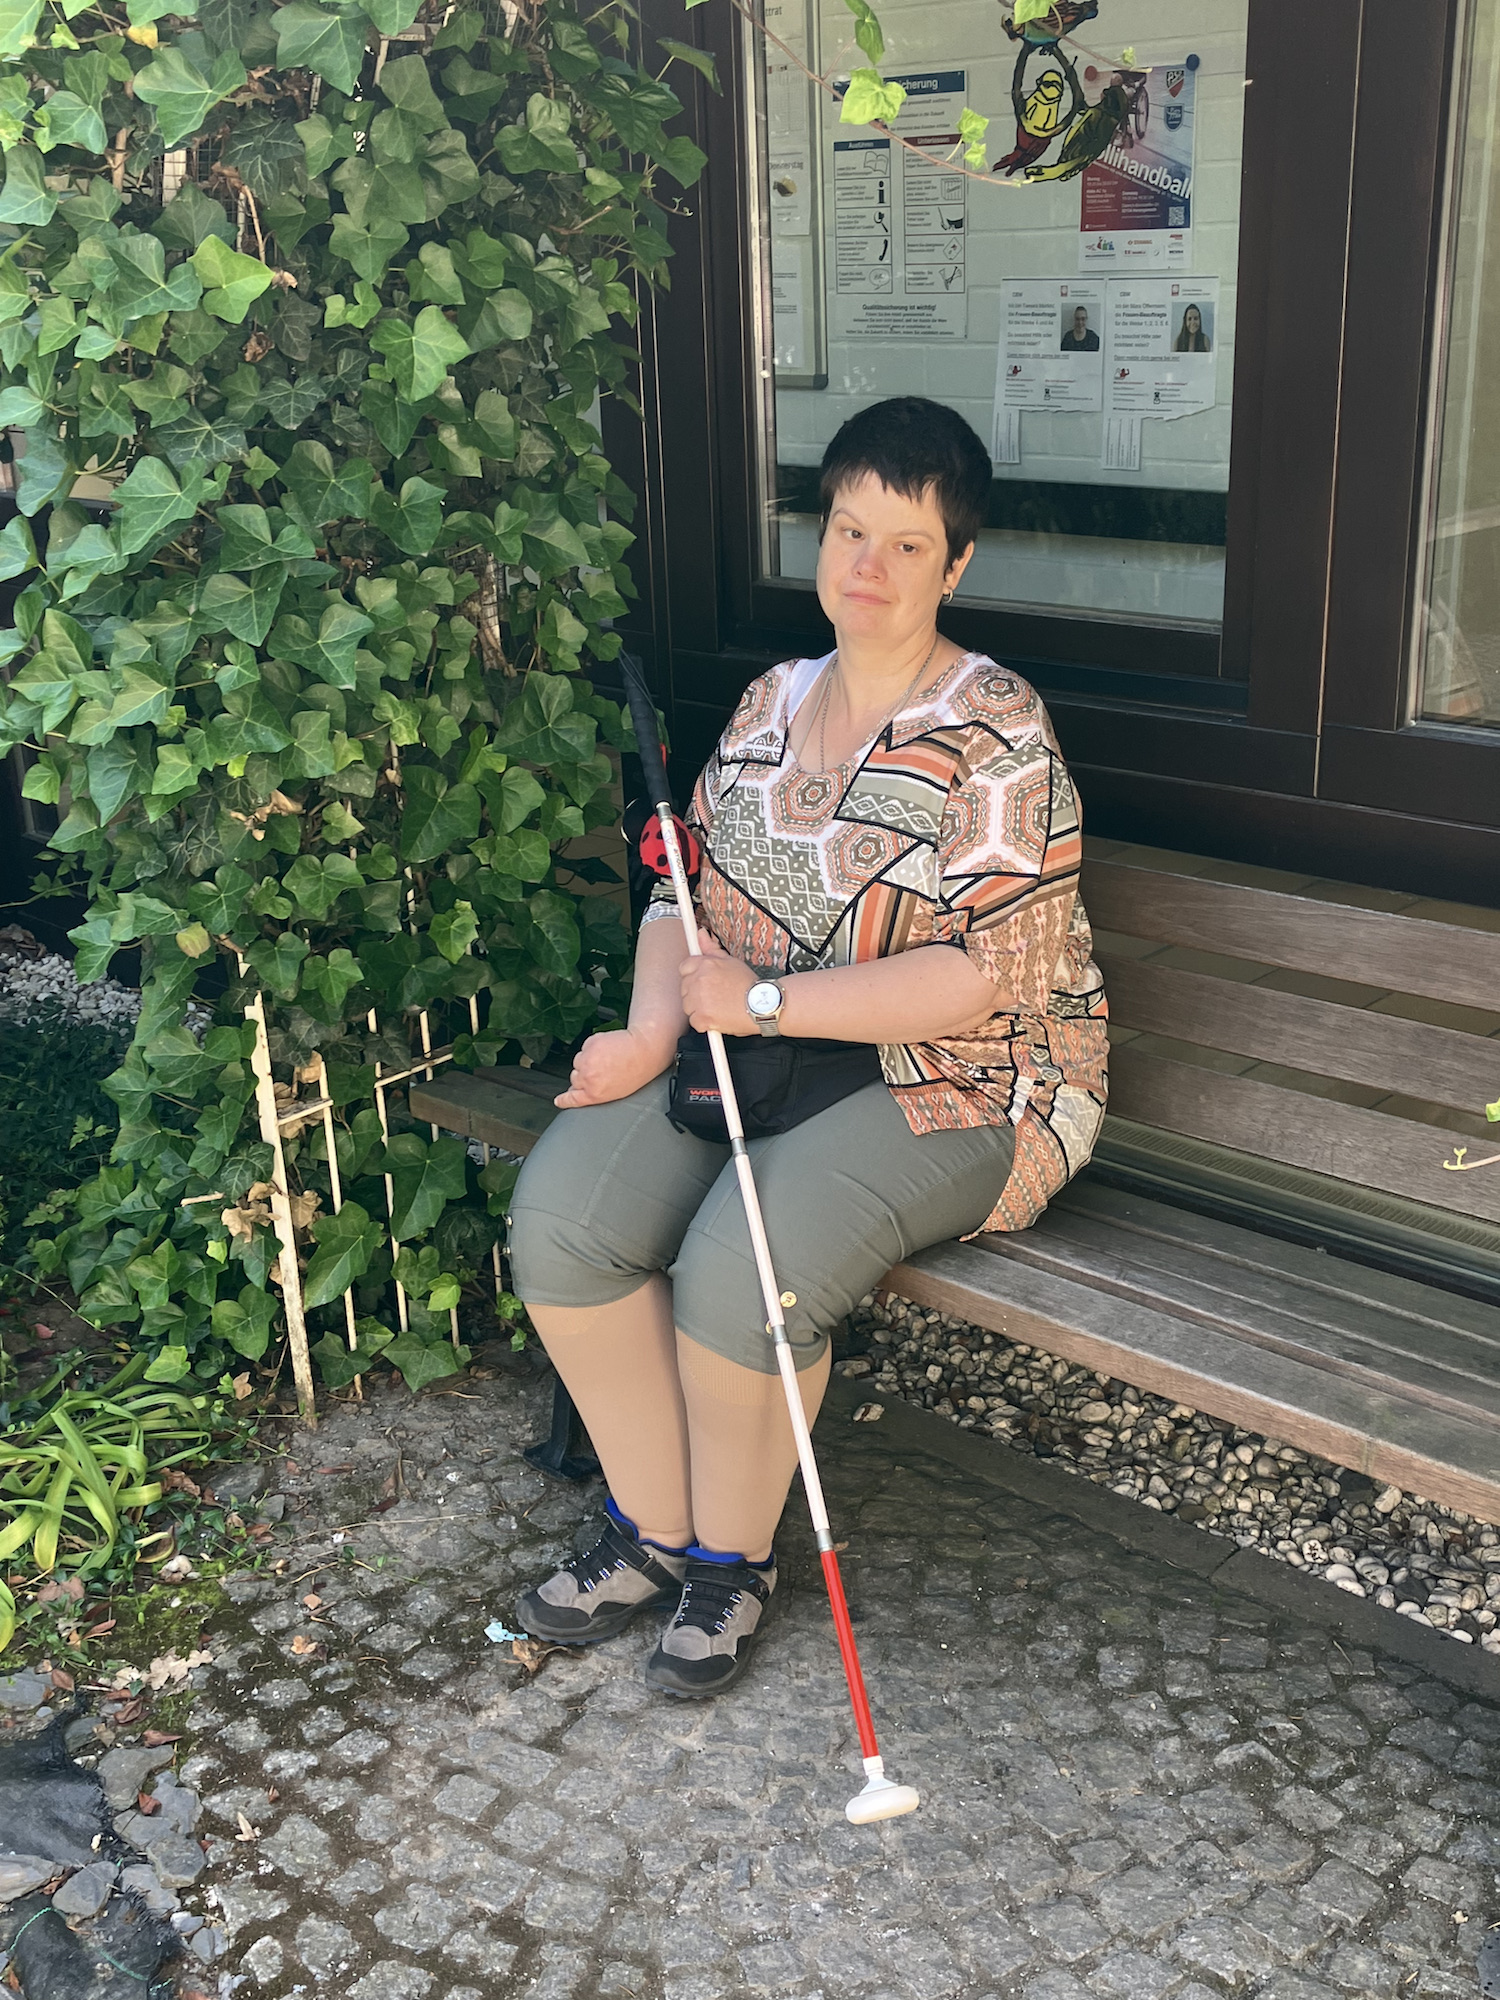 Mit ihrer Blindheit hat sie sich im Alltag arrangiert, auch dank Unterstützung und Hilfsmitteln. (c) Andrea Thomas